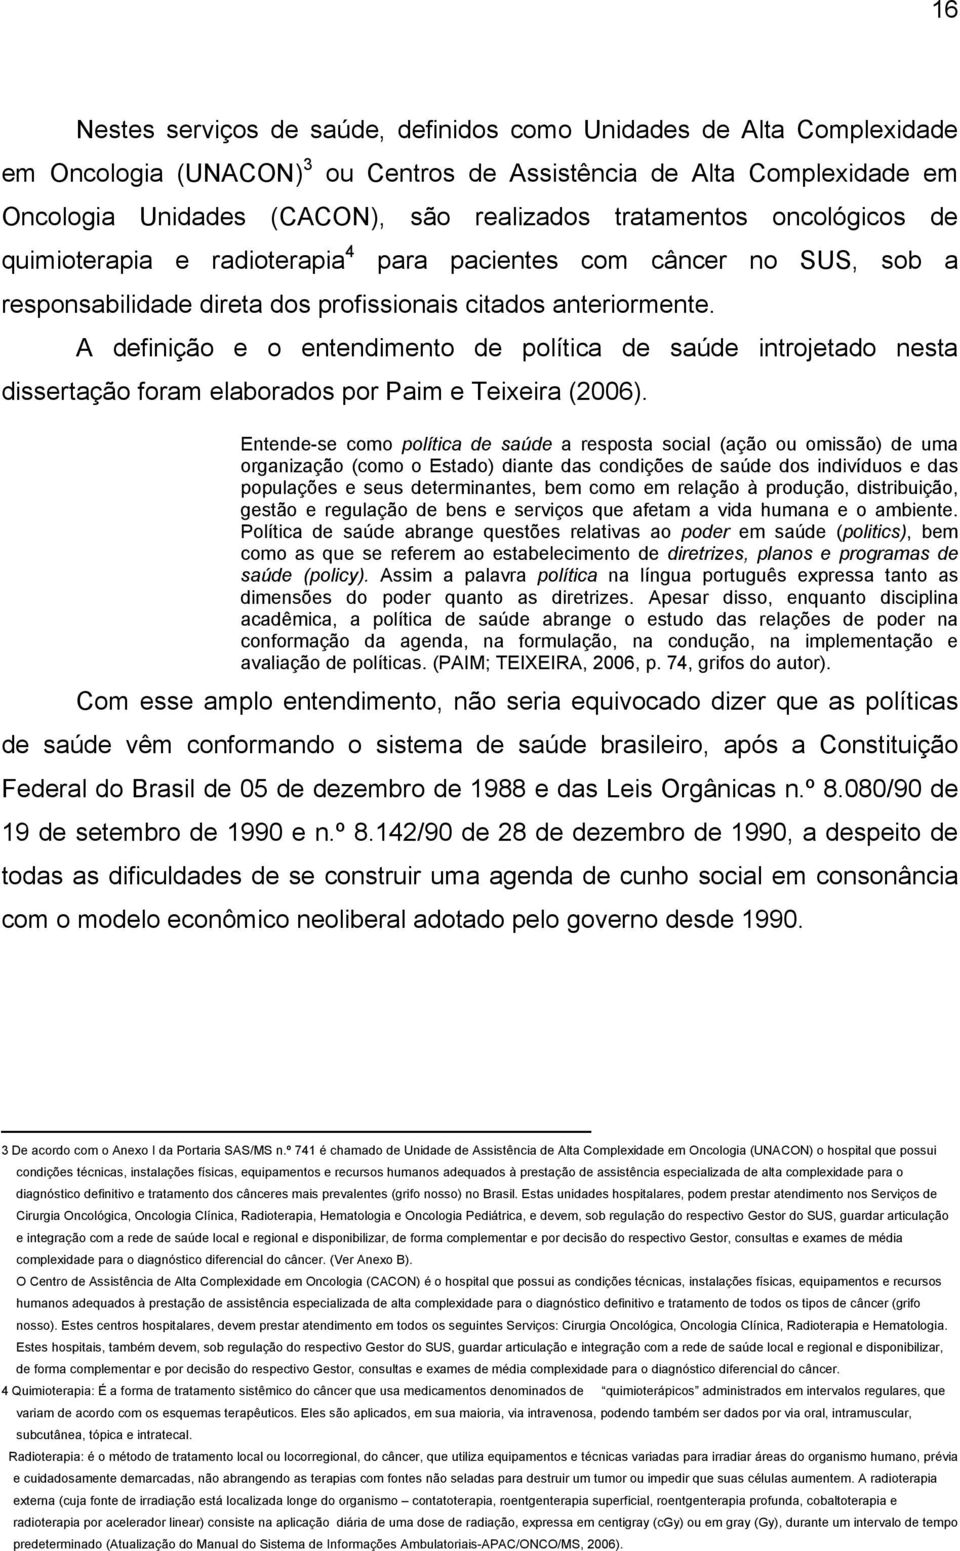 A definição e o entendimento de política de saúde introjetado nesta dissertação foram elaborados por Paim e Teixeira (2006).